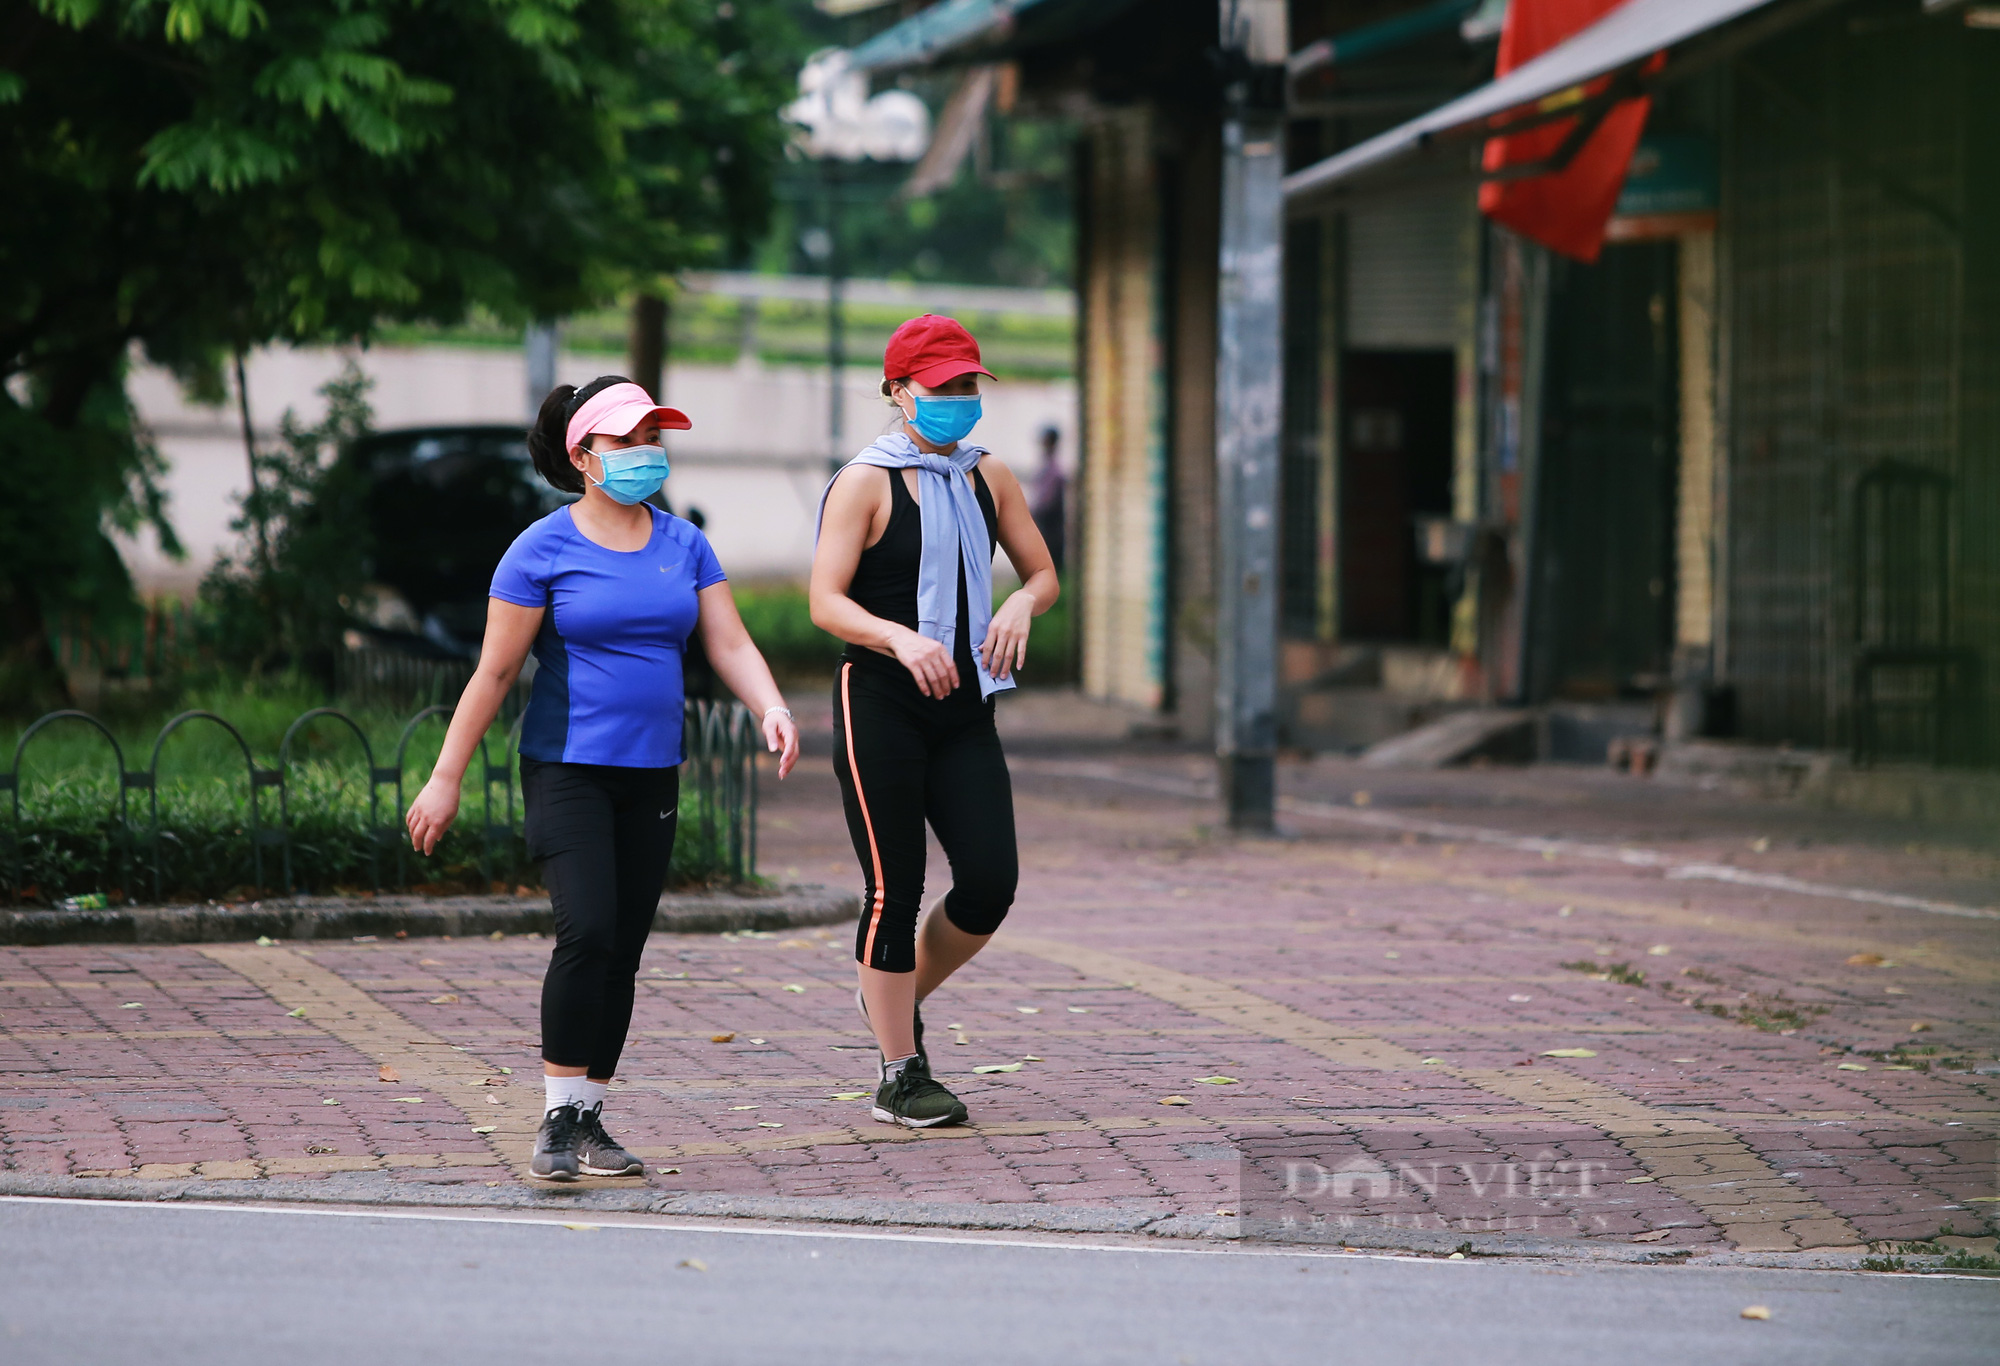 Hà Nội: Nhiều người dân vẫn lơ là chống dịch, thản nhiên luyện tập thể dục ngoài đường phố - Ảnh 5.